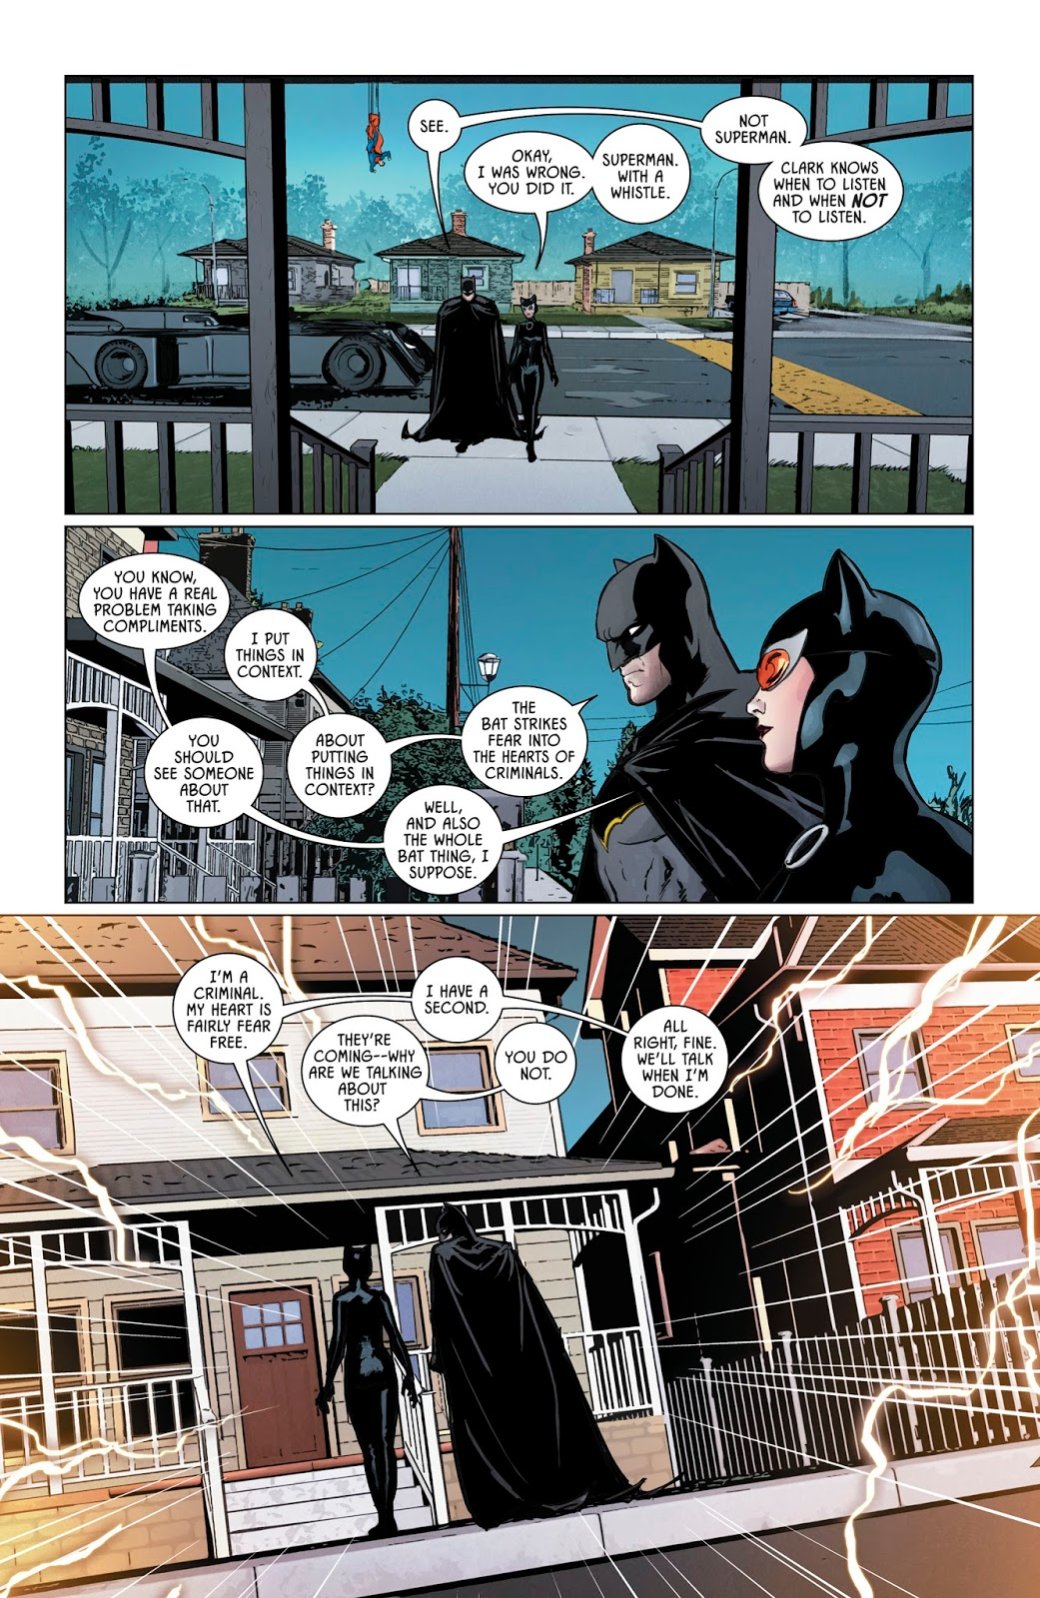 Галерея Ядовитый плющ захватила весь мир, и даже Бэтмен не может ничего с этим поделать. Как так вышло? - 3 фото